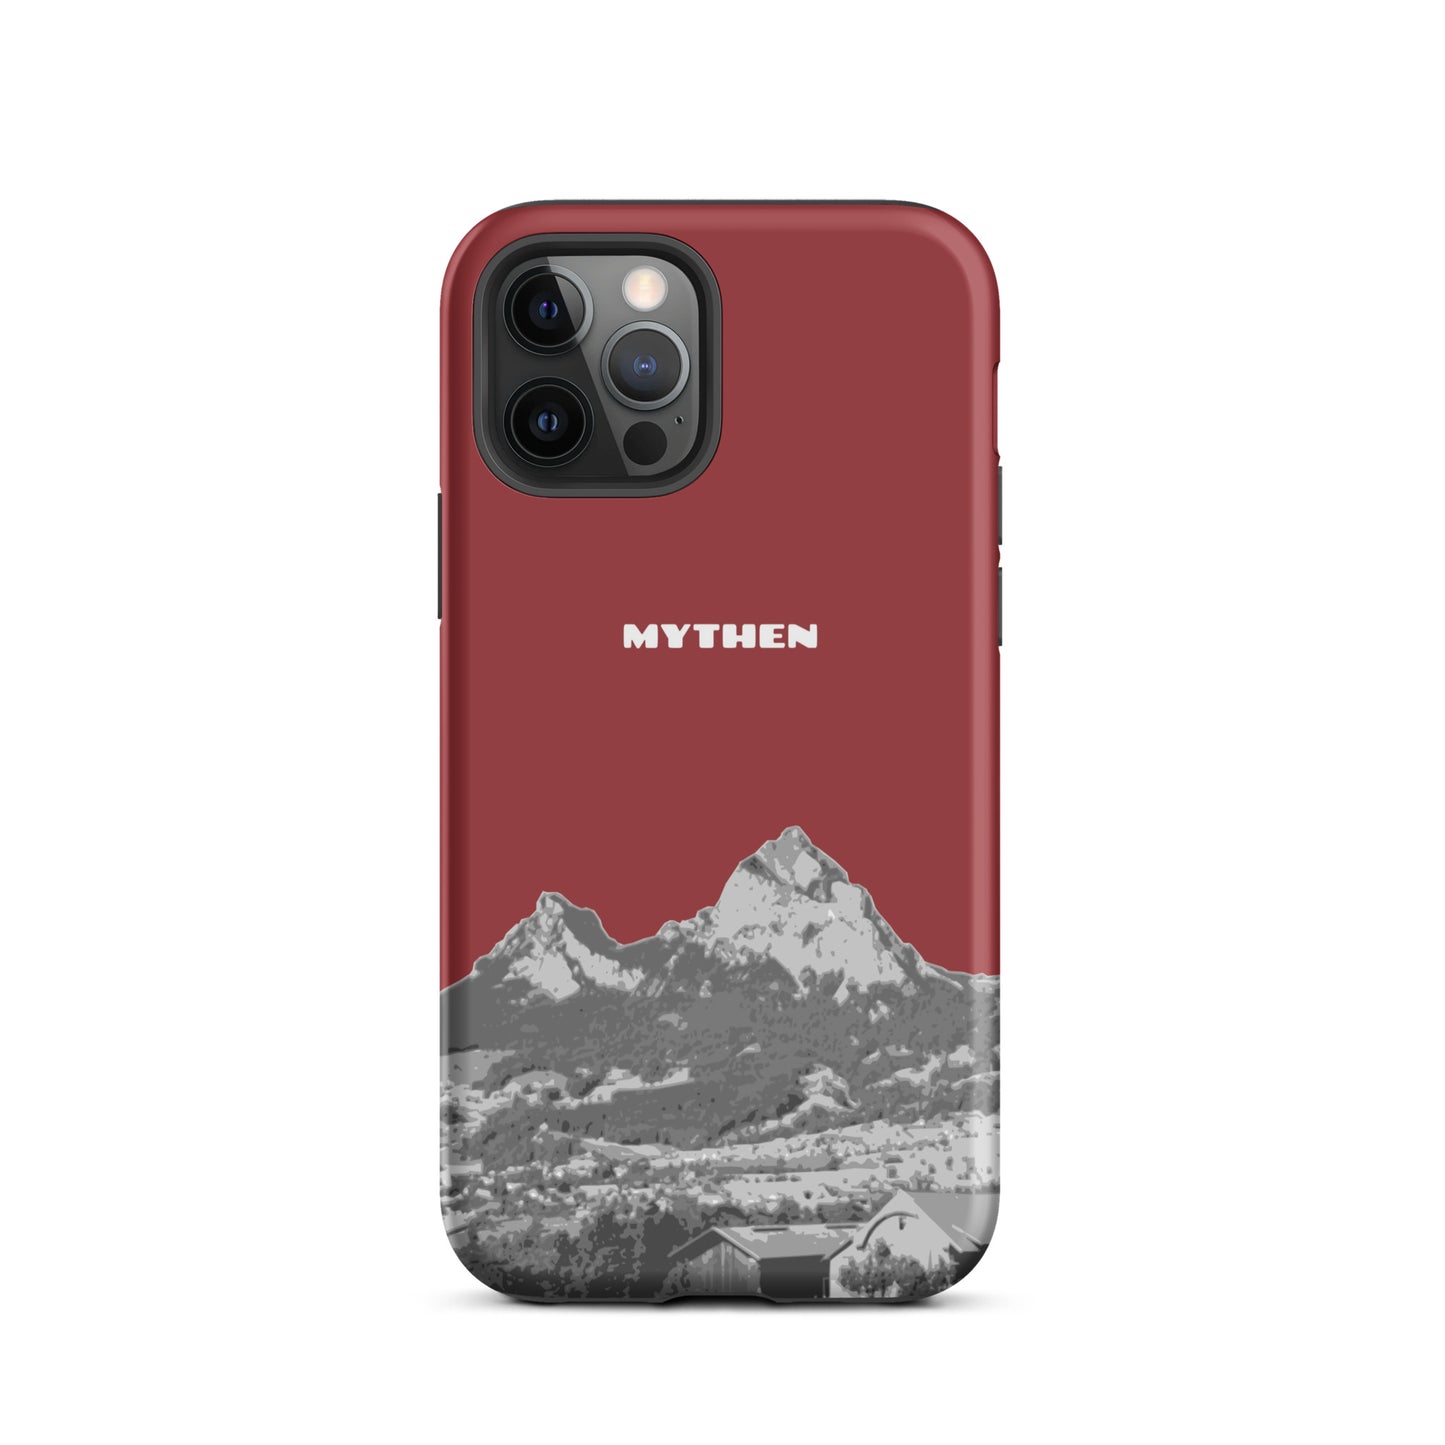 Hülle für das iPhone 12 Pro von Apple in der Farbe Rot, die den Grossen Mythen und den Kleinen Mythen bei Schwyz zeigt. 